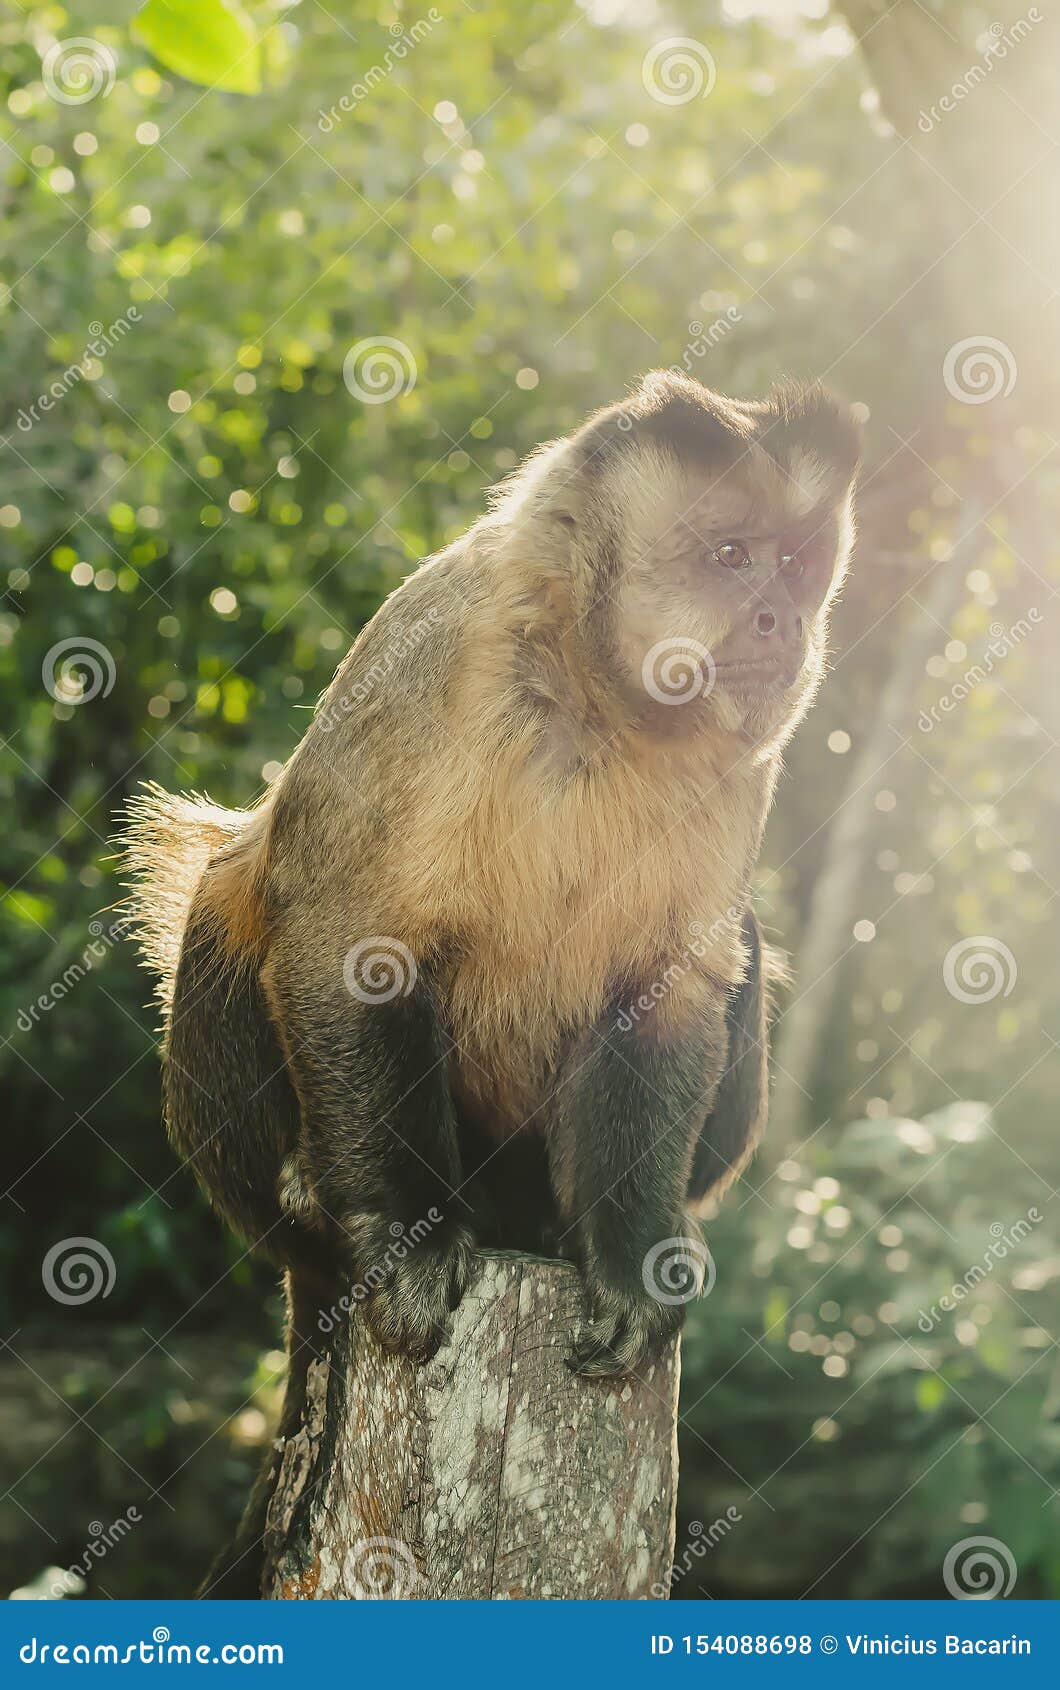 Foto De Stock Antiga Ilustração Do Macaco-Prego, Royalty-Free